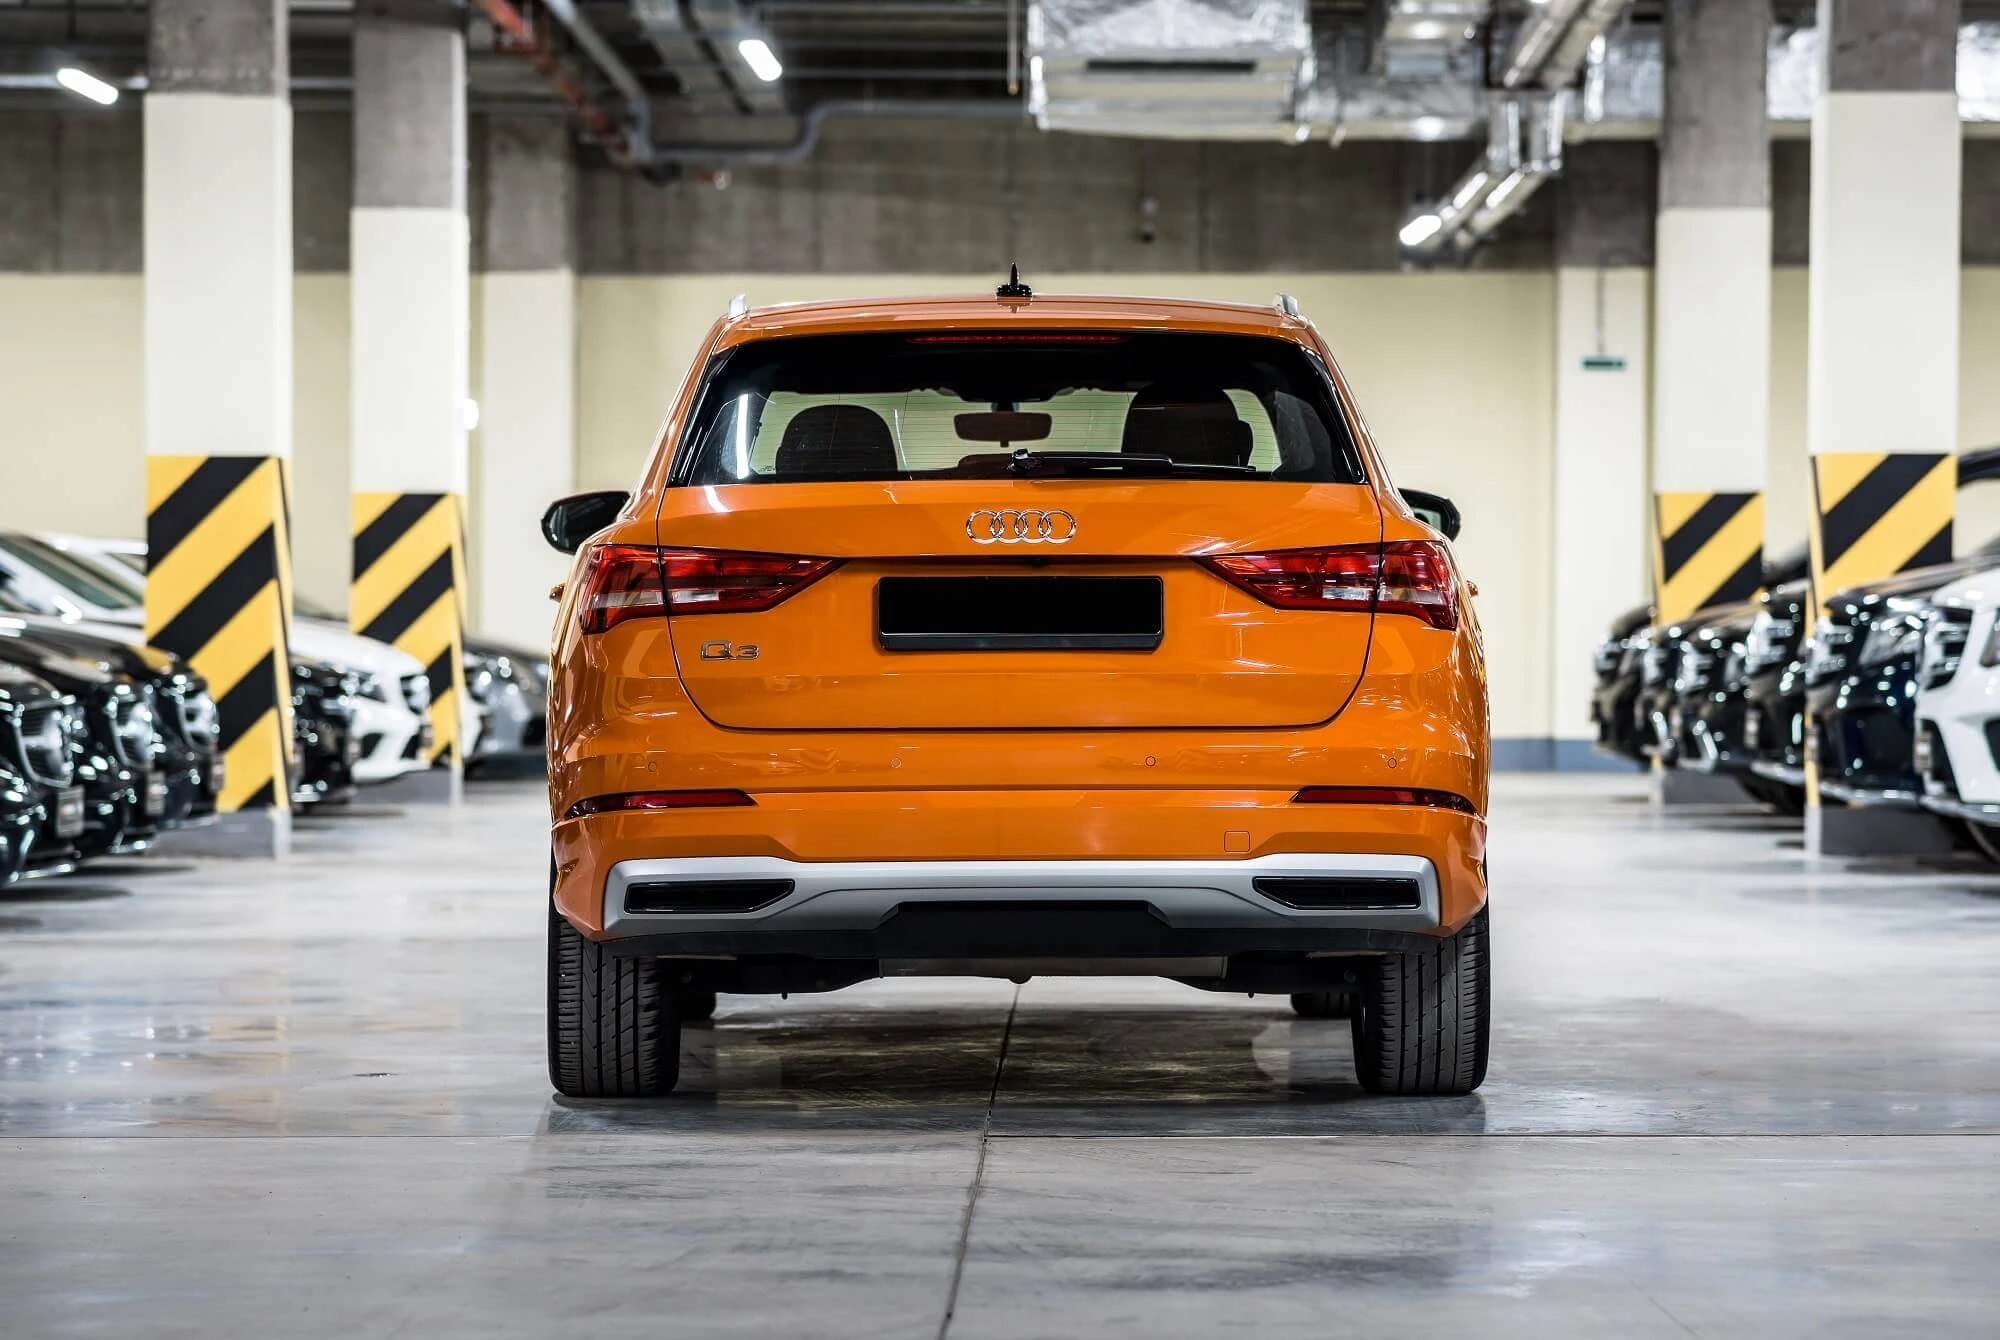 Audi Q3 оранжевый